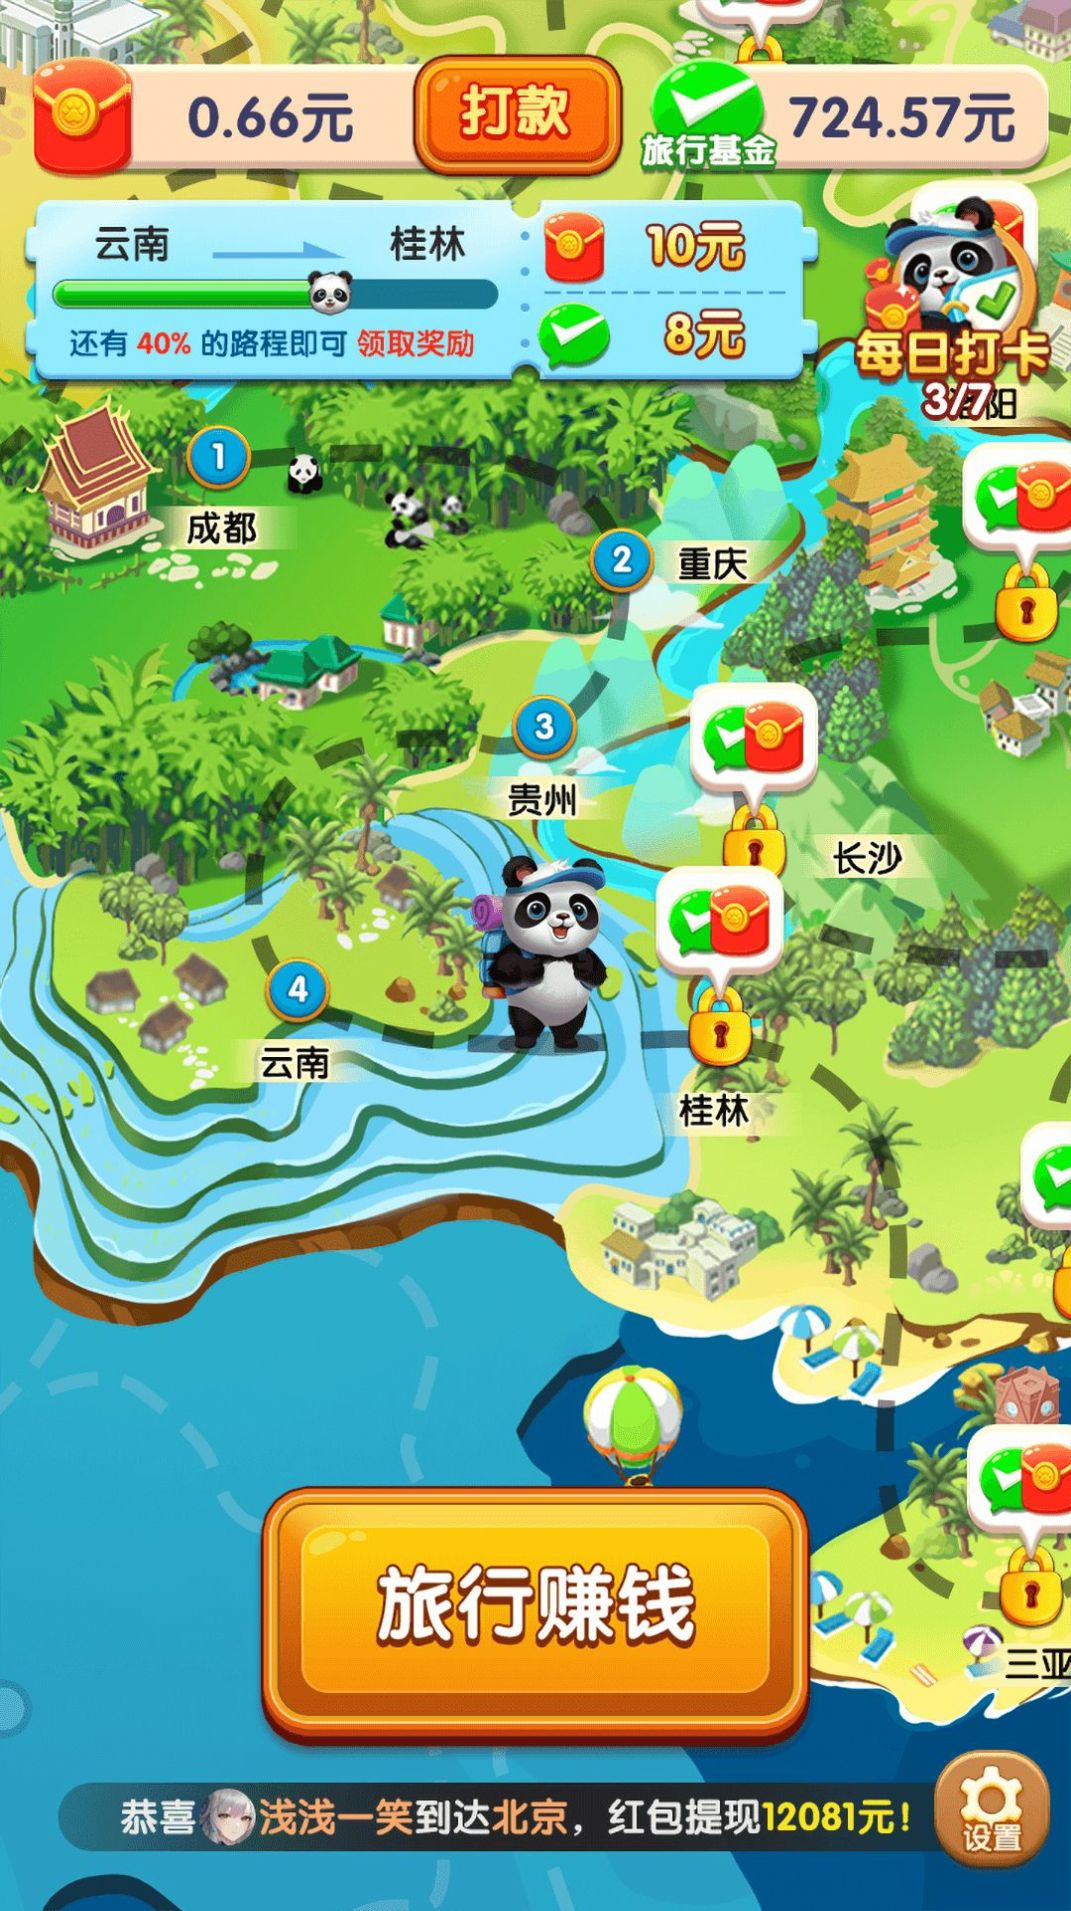 熊猫爱旅行赚钱游戏